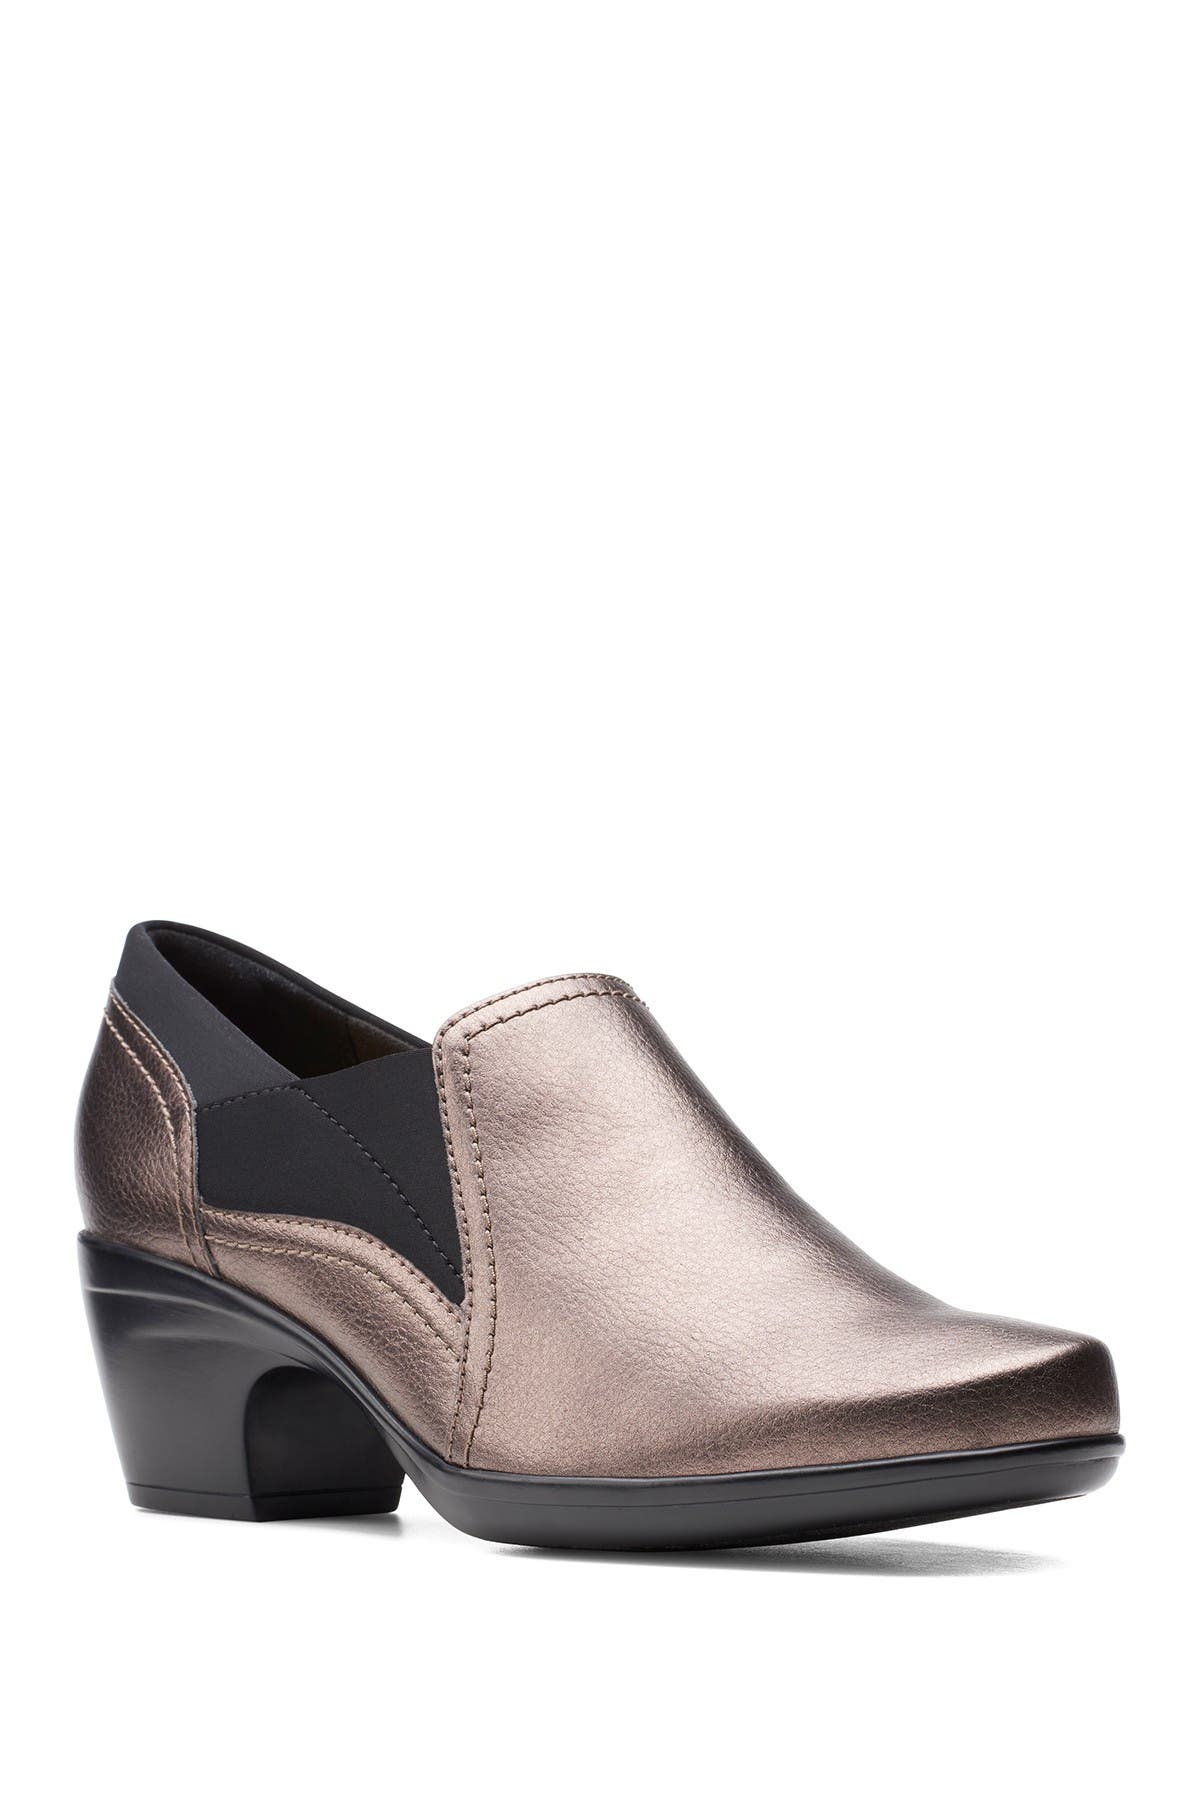 clarks wide width heels